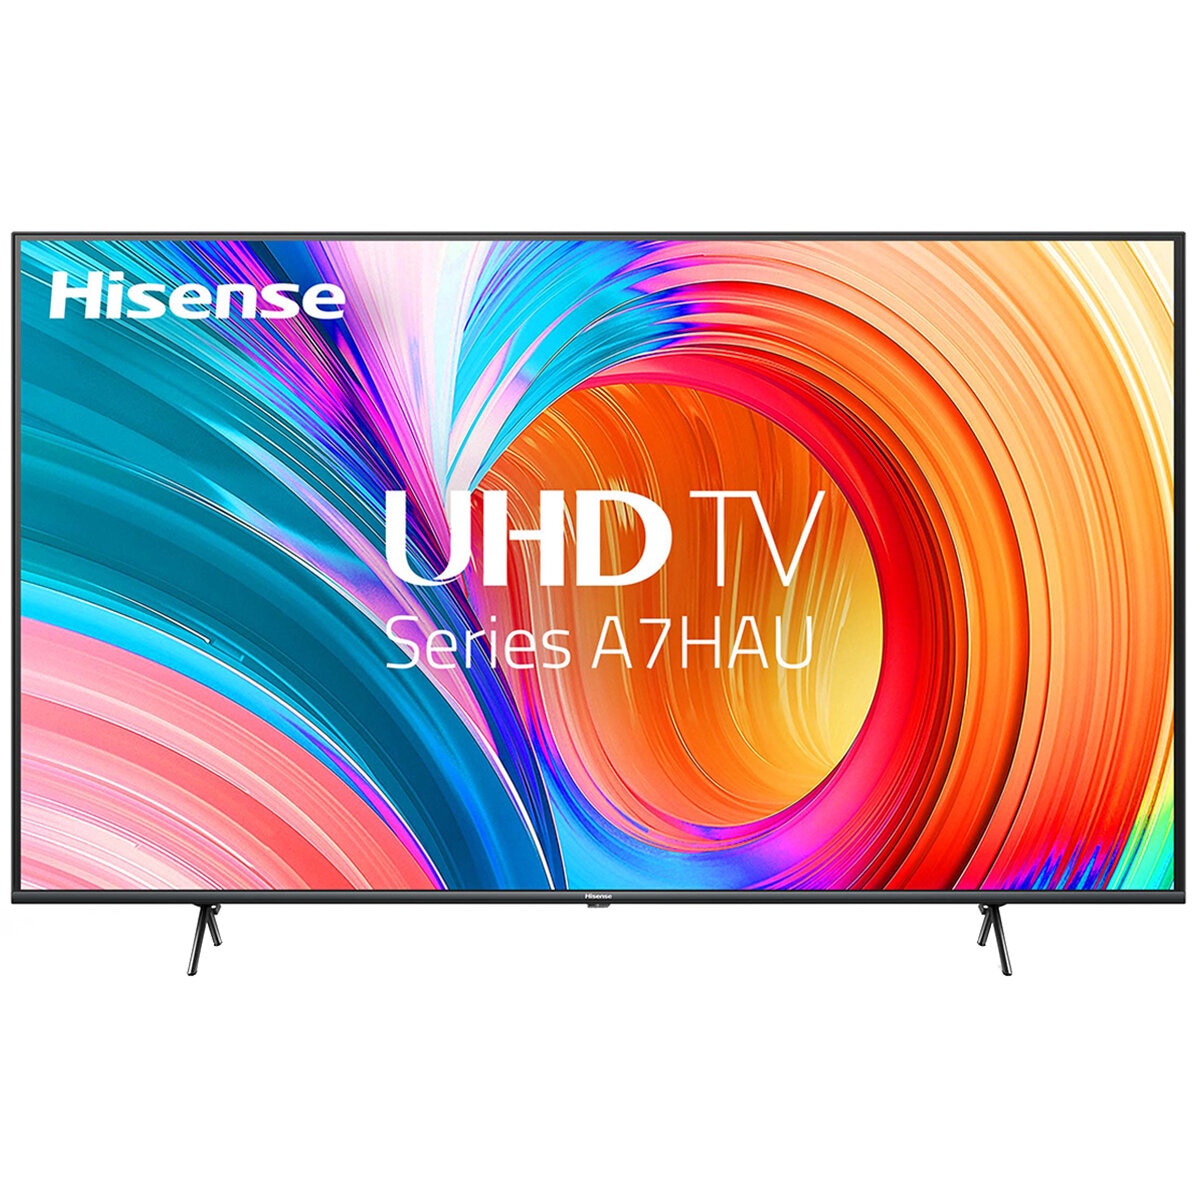 Hisense 55 Inch UHD 4K Smart TV 55A7HAU